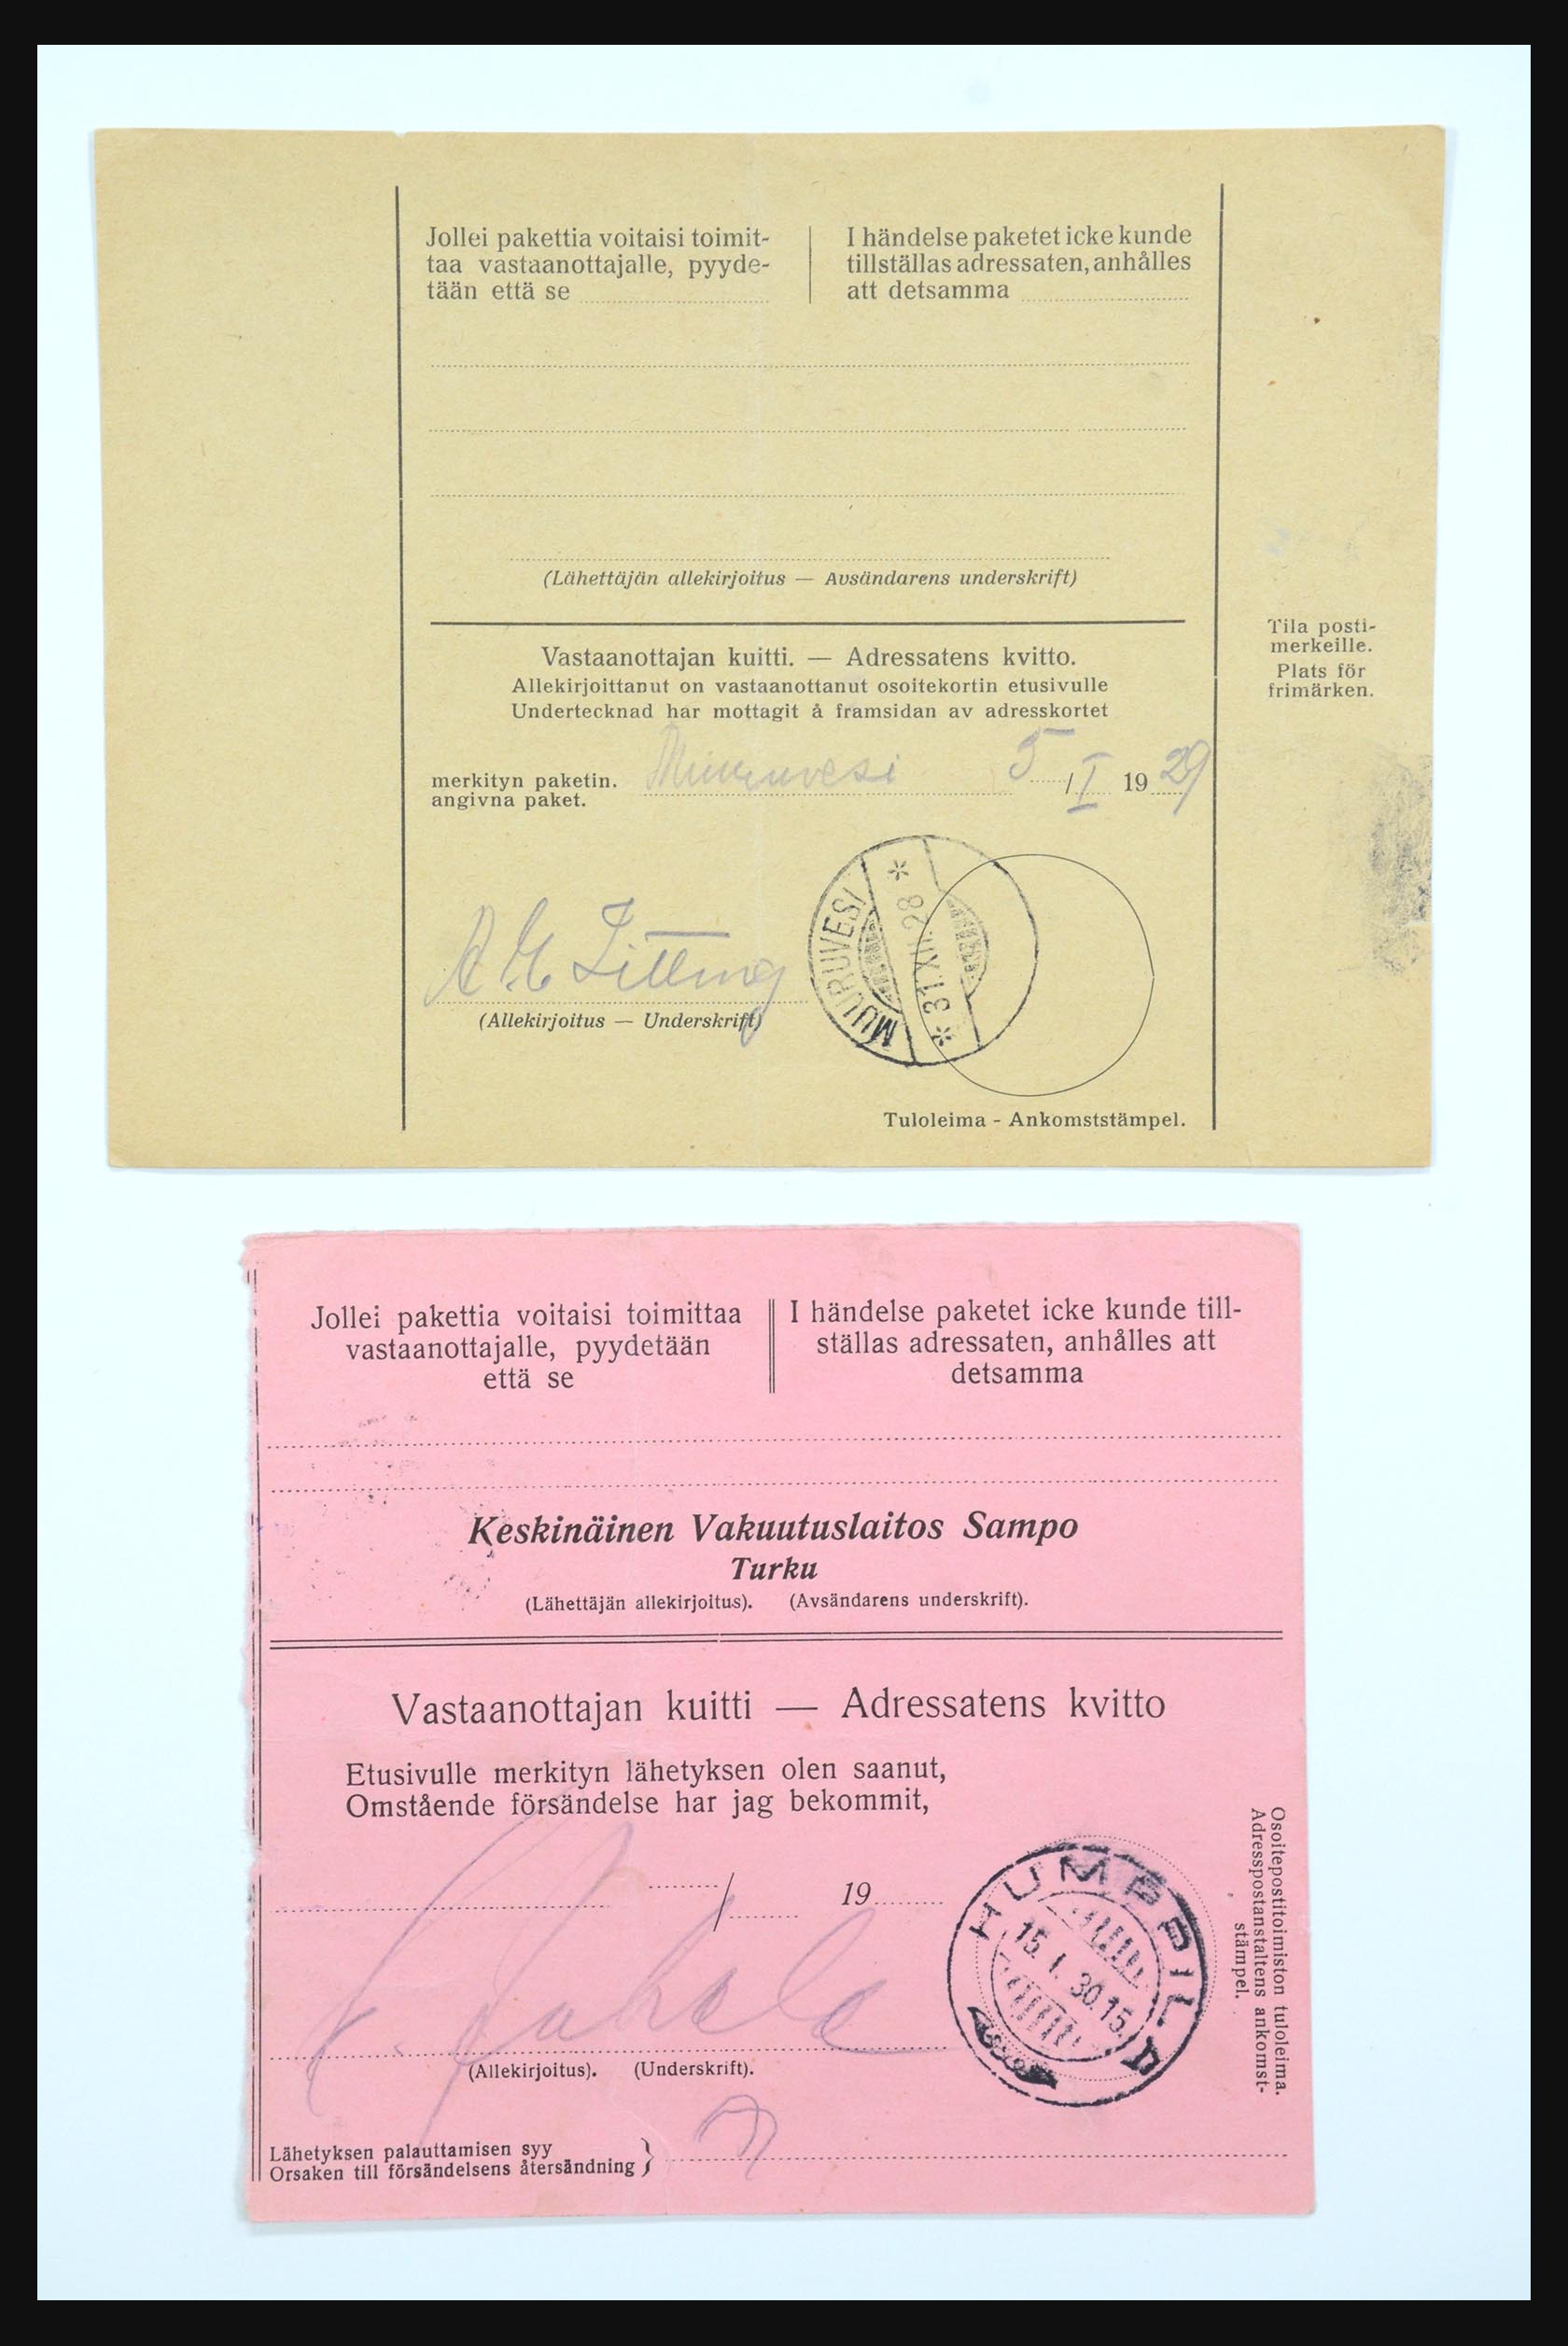 31658 059 - 31658 Finland brieven 1833-1960.